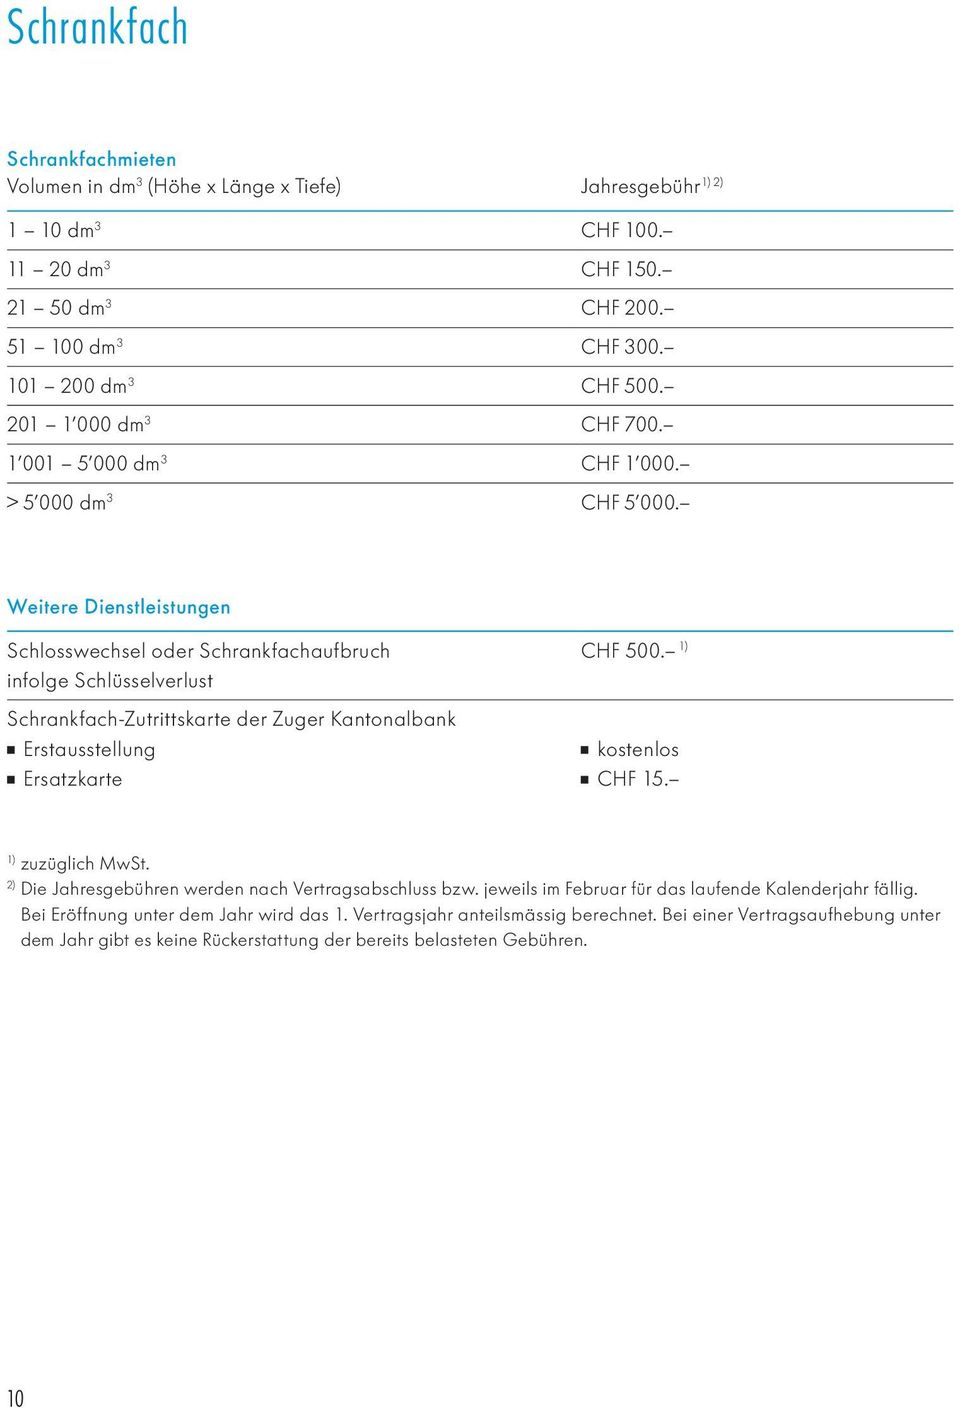 Weitere Dienstleistungen Schlosswechsel oder Schrankfachaufbruch infolge Schlüsselverlust Schrankfach-Zutrittskarte der Zuger Kantonalbank Erstausstellung Ersatzkarte CHF 500. 1) CHF 15.